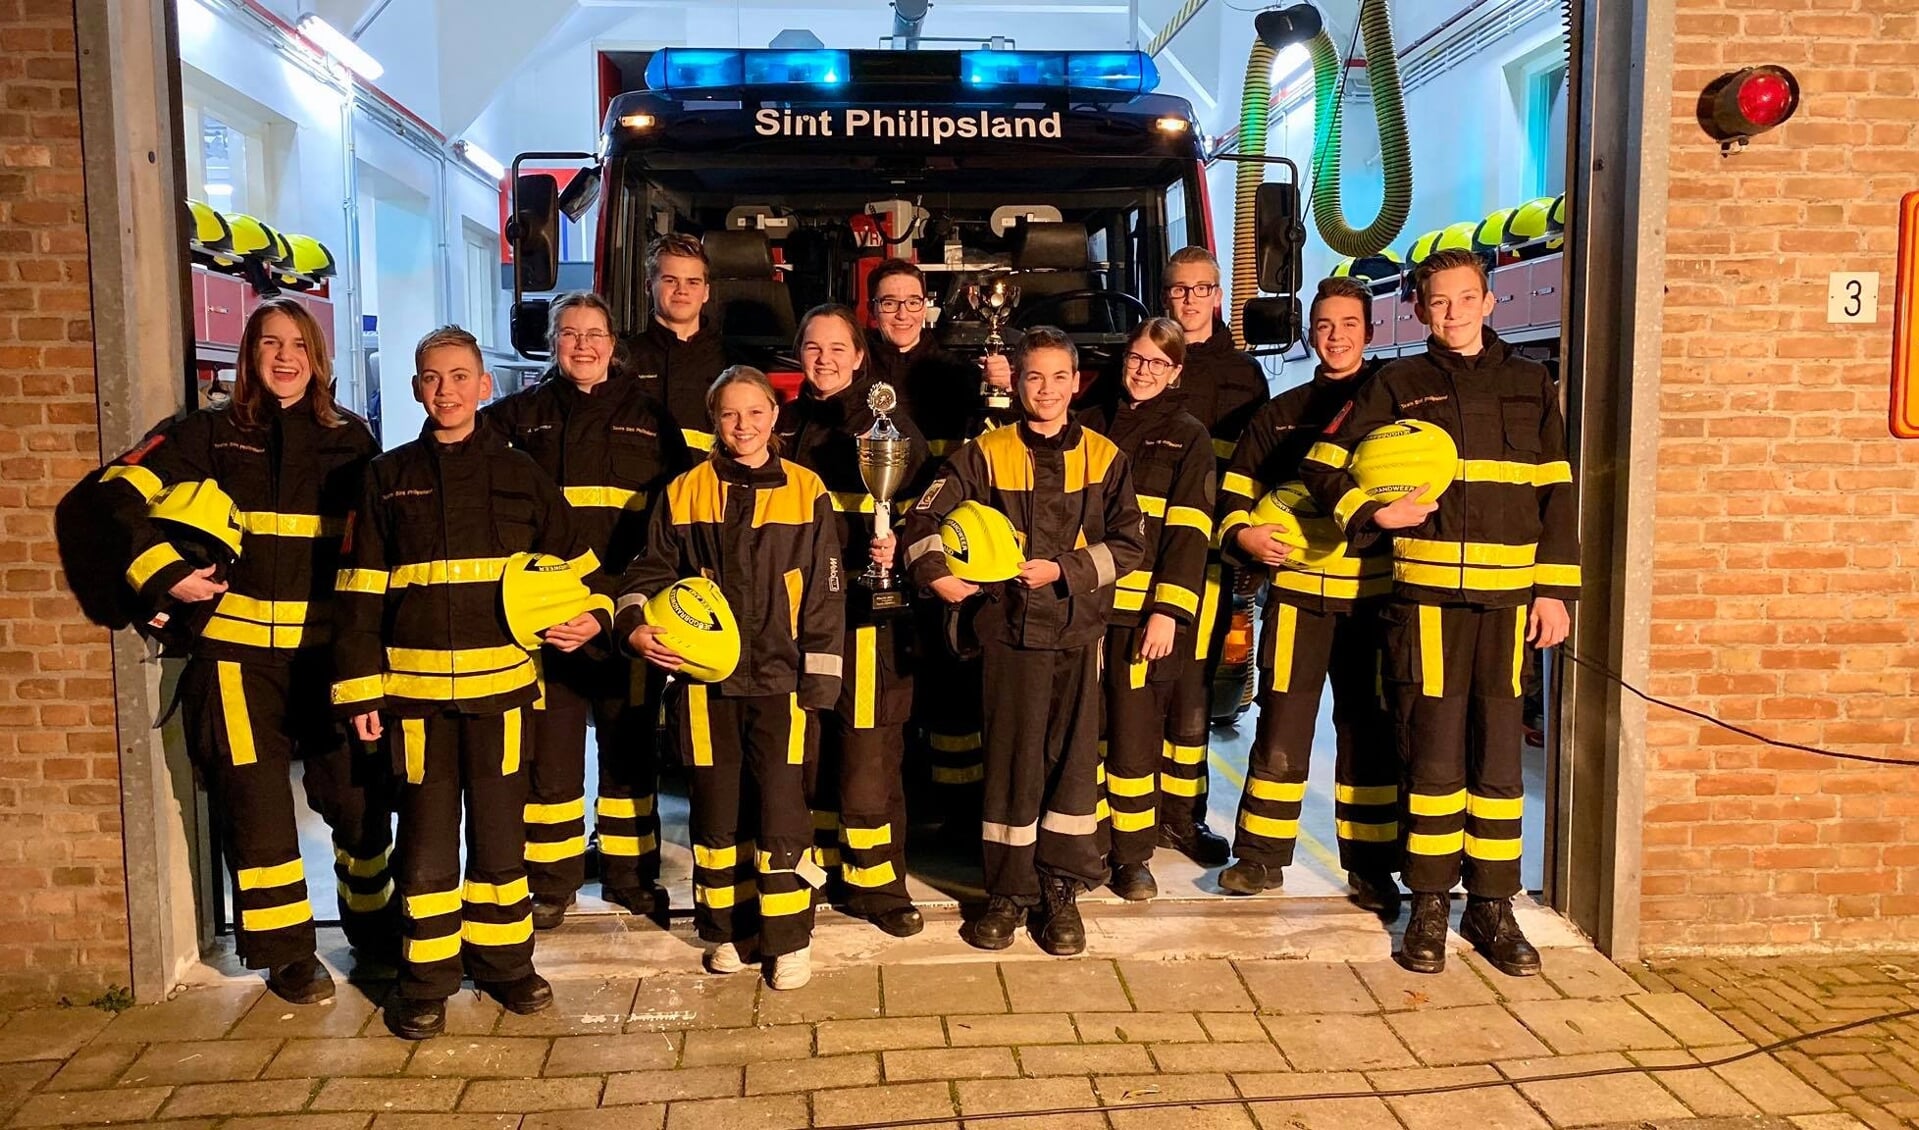 De juniorenploeg van de jeugdbrandweer Sint Philipsland heeft naam gemaakt. 